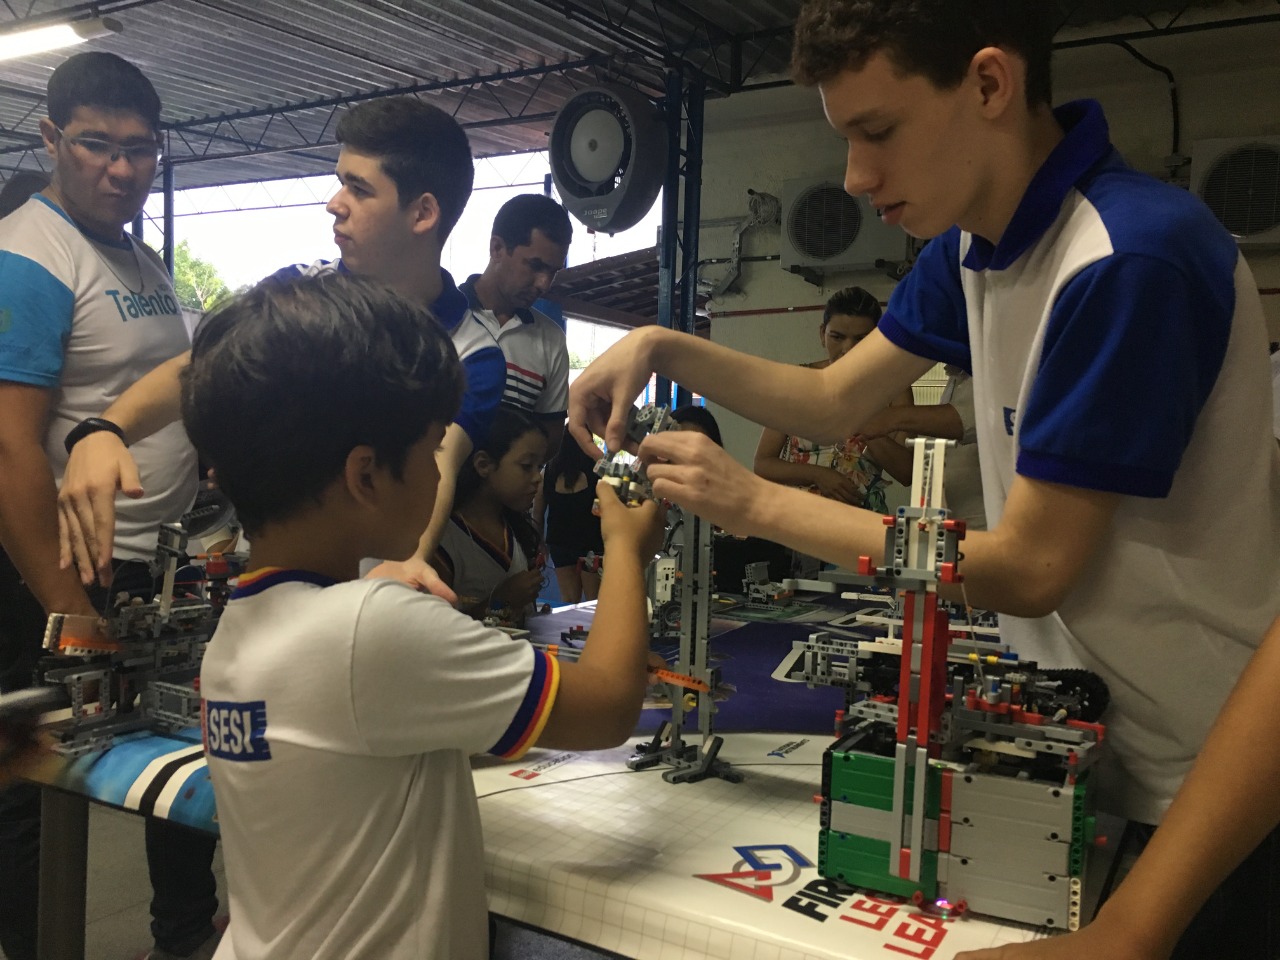 Escola Sesi conta com aula de robótica para estudantes do ensino fundamental